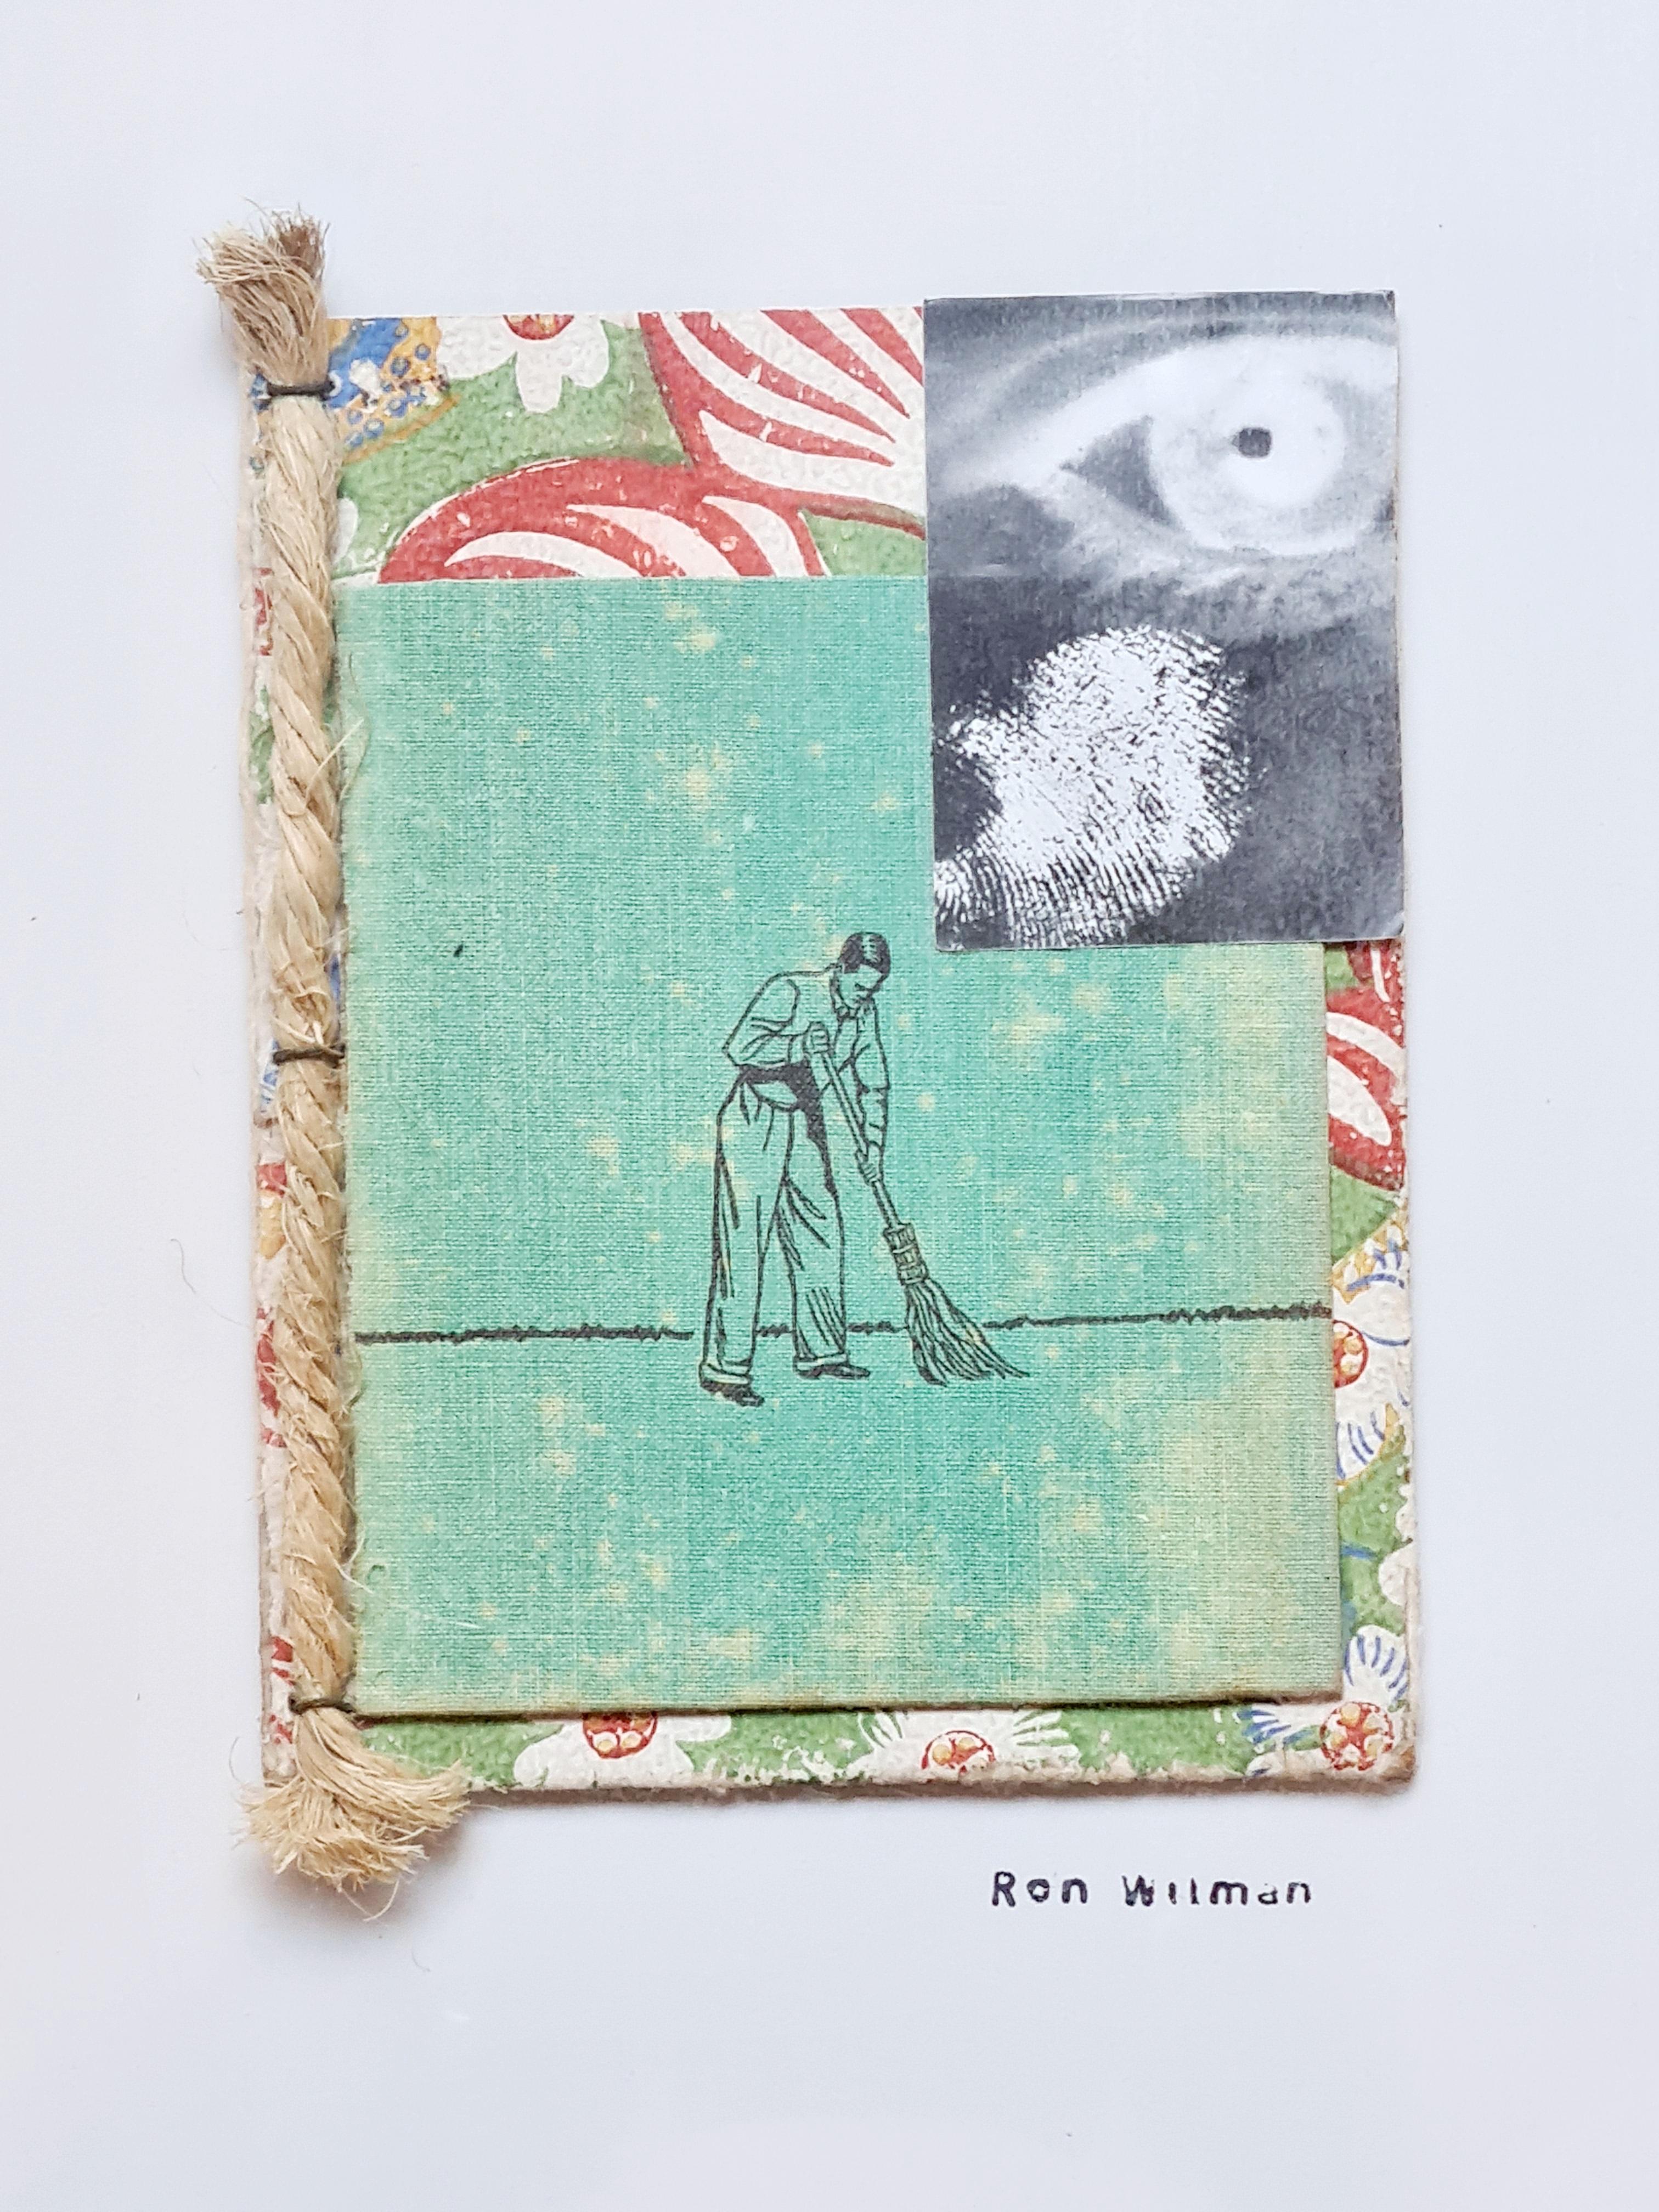 „Dust my Broom“ (für Elmore James), Dada-Collage in Mischtechnik – Mixed Media Art von Ron Wilman